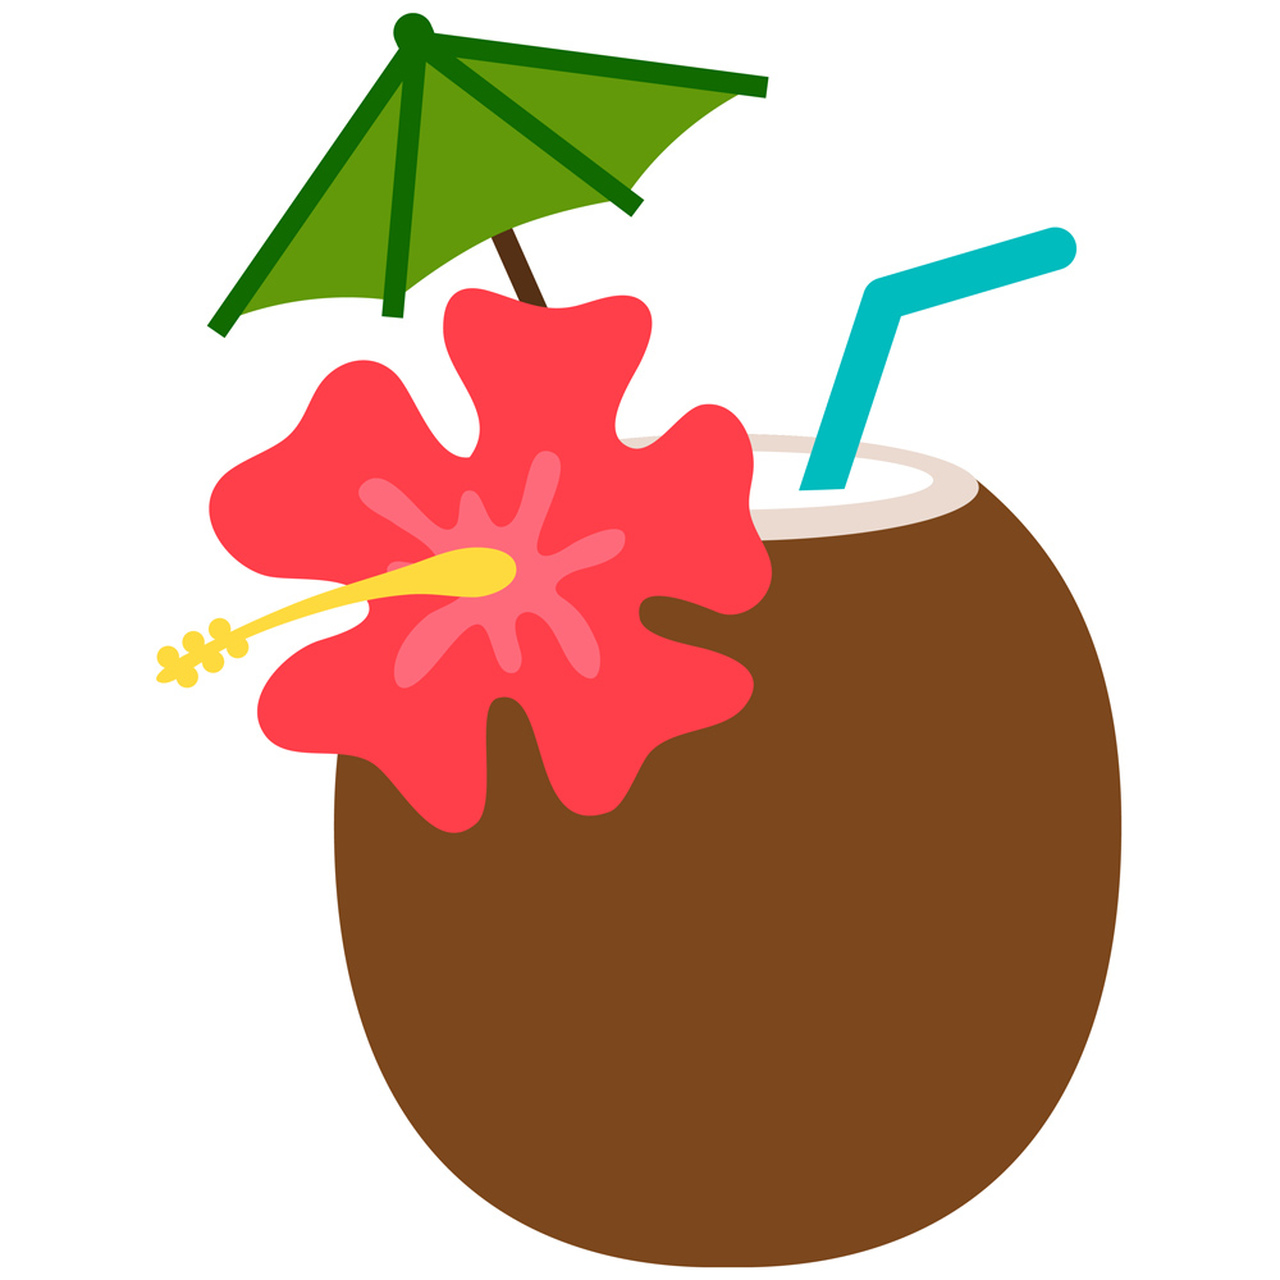 coconut clipart hawaiian party